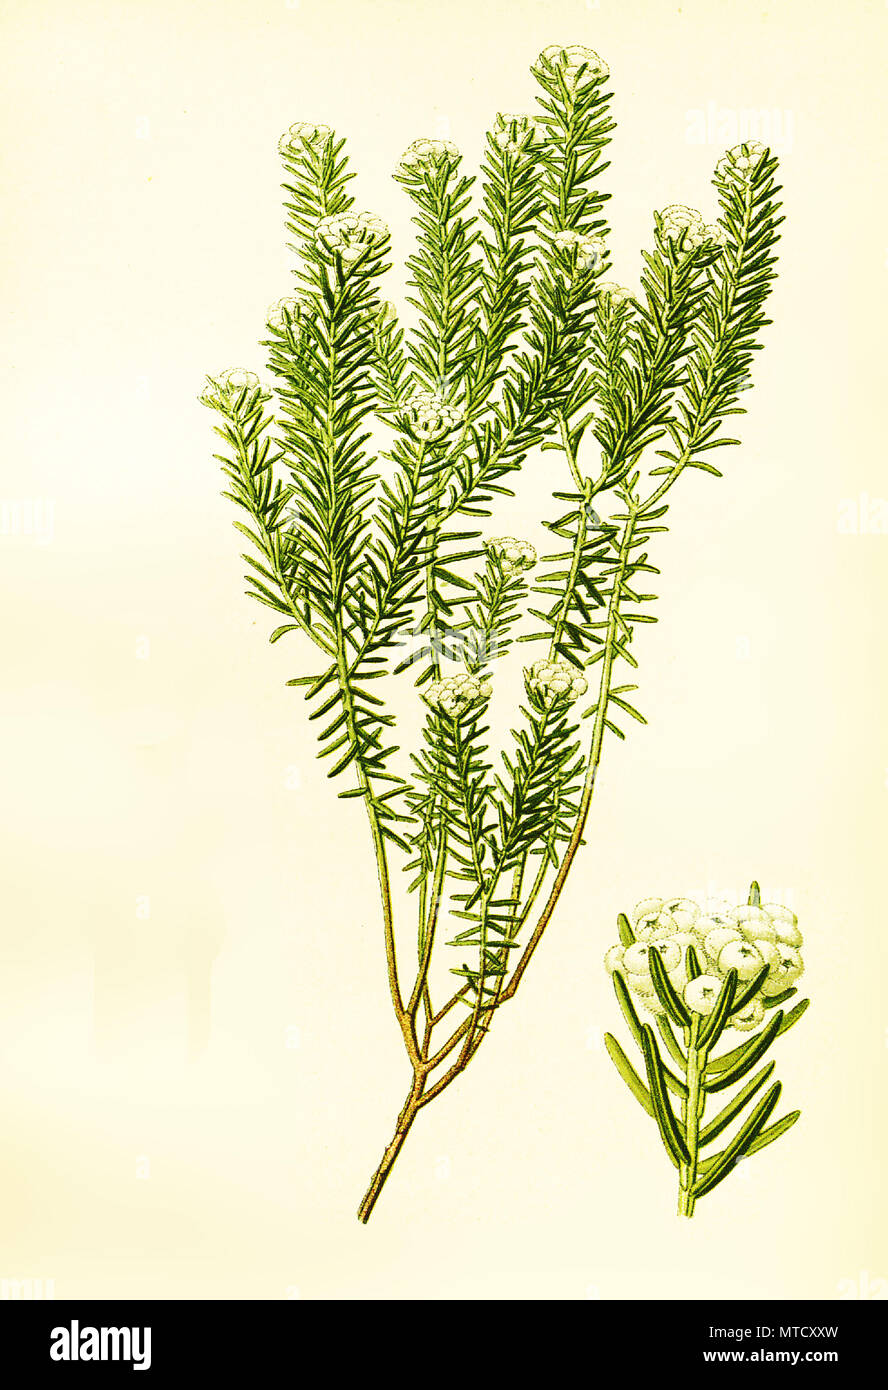 Phylica ericoides, Phylica ist eine Gattung von Pflanzen in der Familie Rhamnaceae. Phylica ist eine Gattung aus der Familie der KreuzdorngewÃ¤chse, digital verbesserte Reproduktion von Drucken des 19. Jahrhunderts Stockfoto